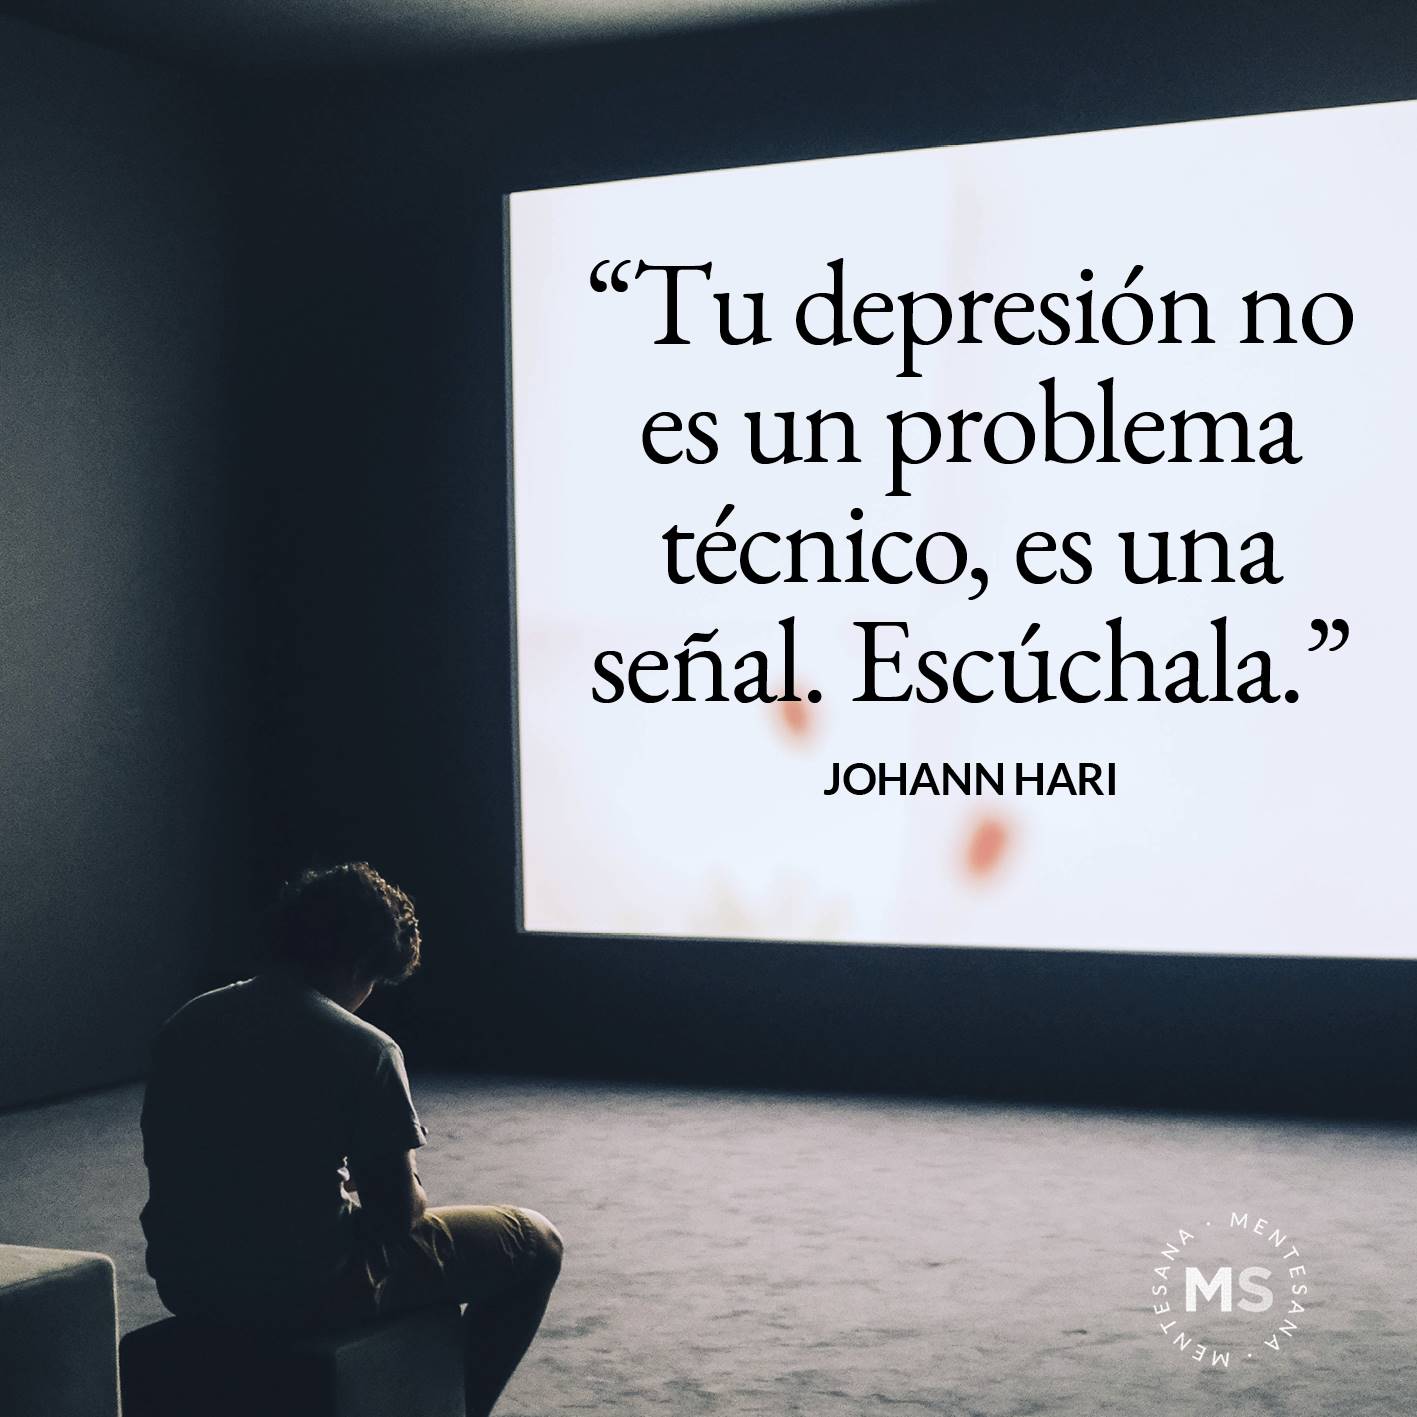 FRASES DIA DE LA DEPRESION3. "Tu depresión no es un problema técnico, es una señal. Escúchala." Johann Hari